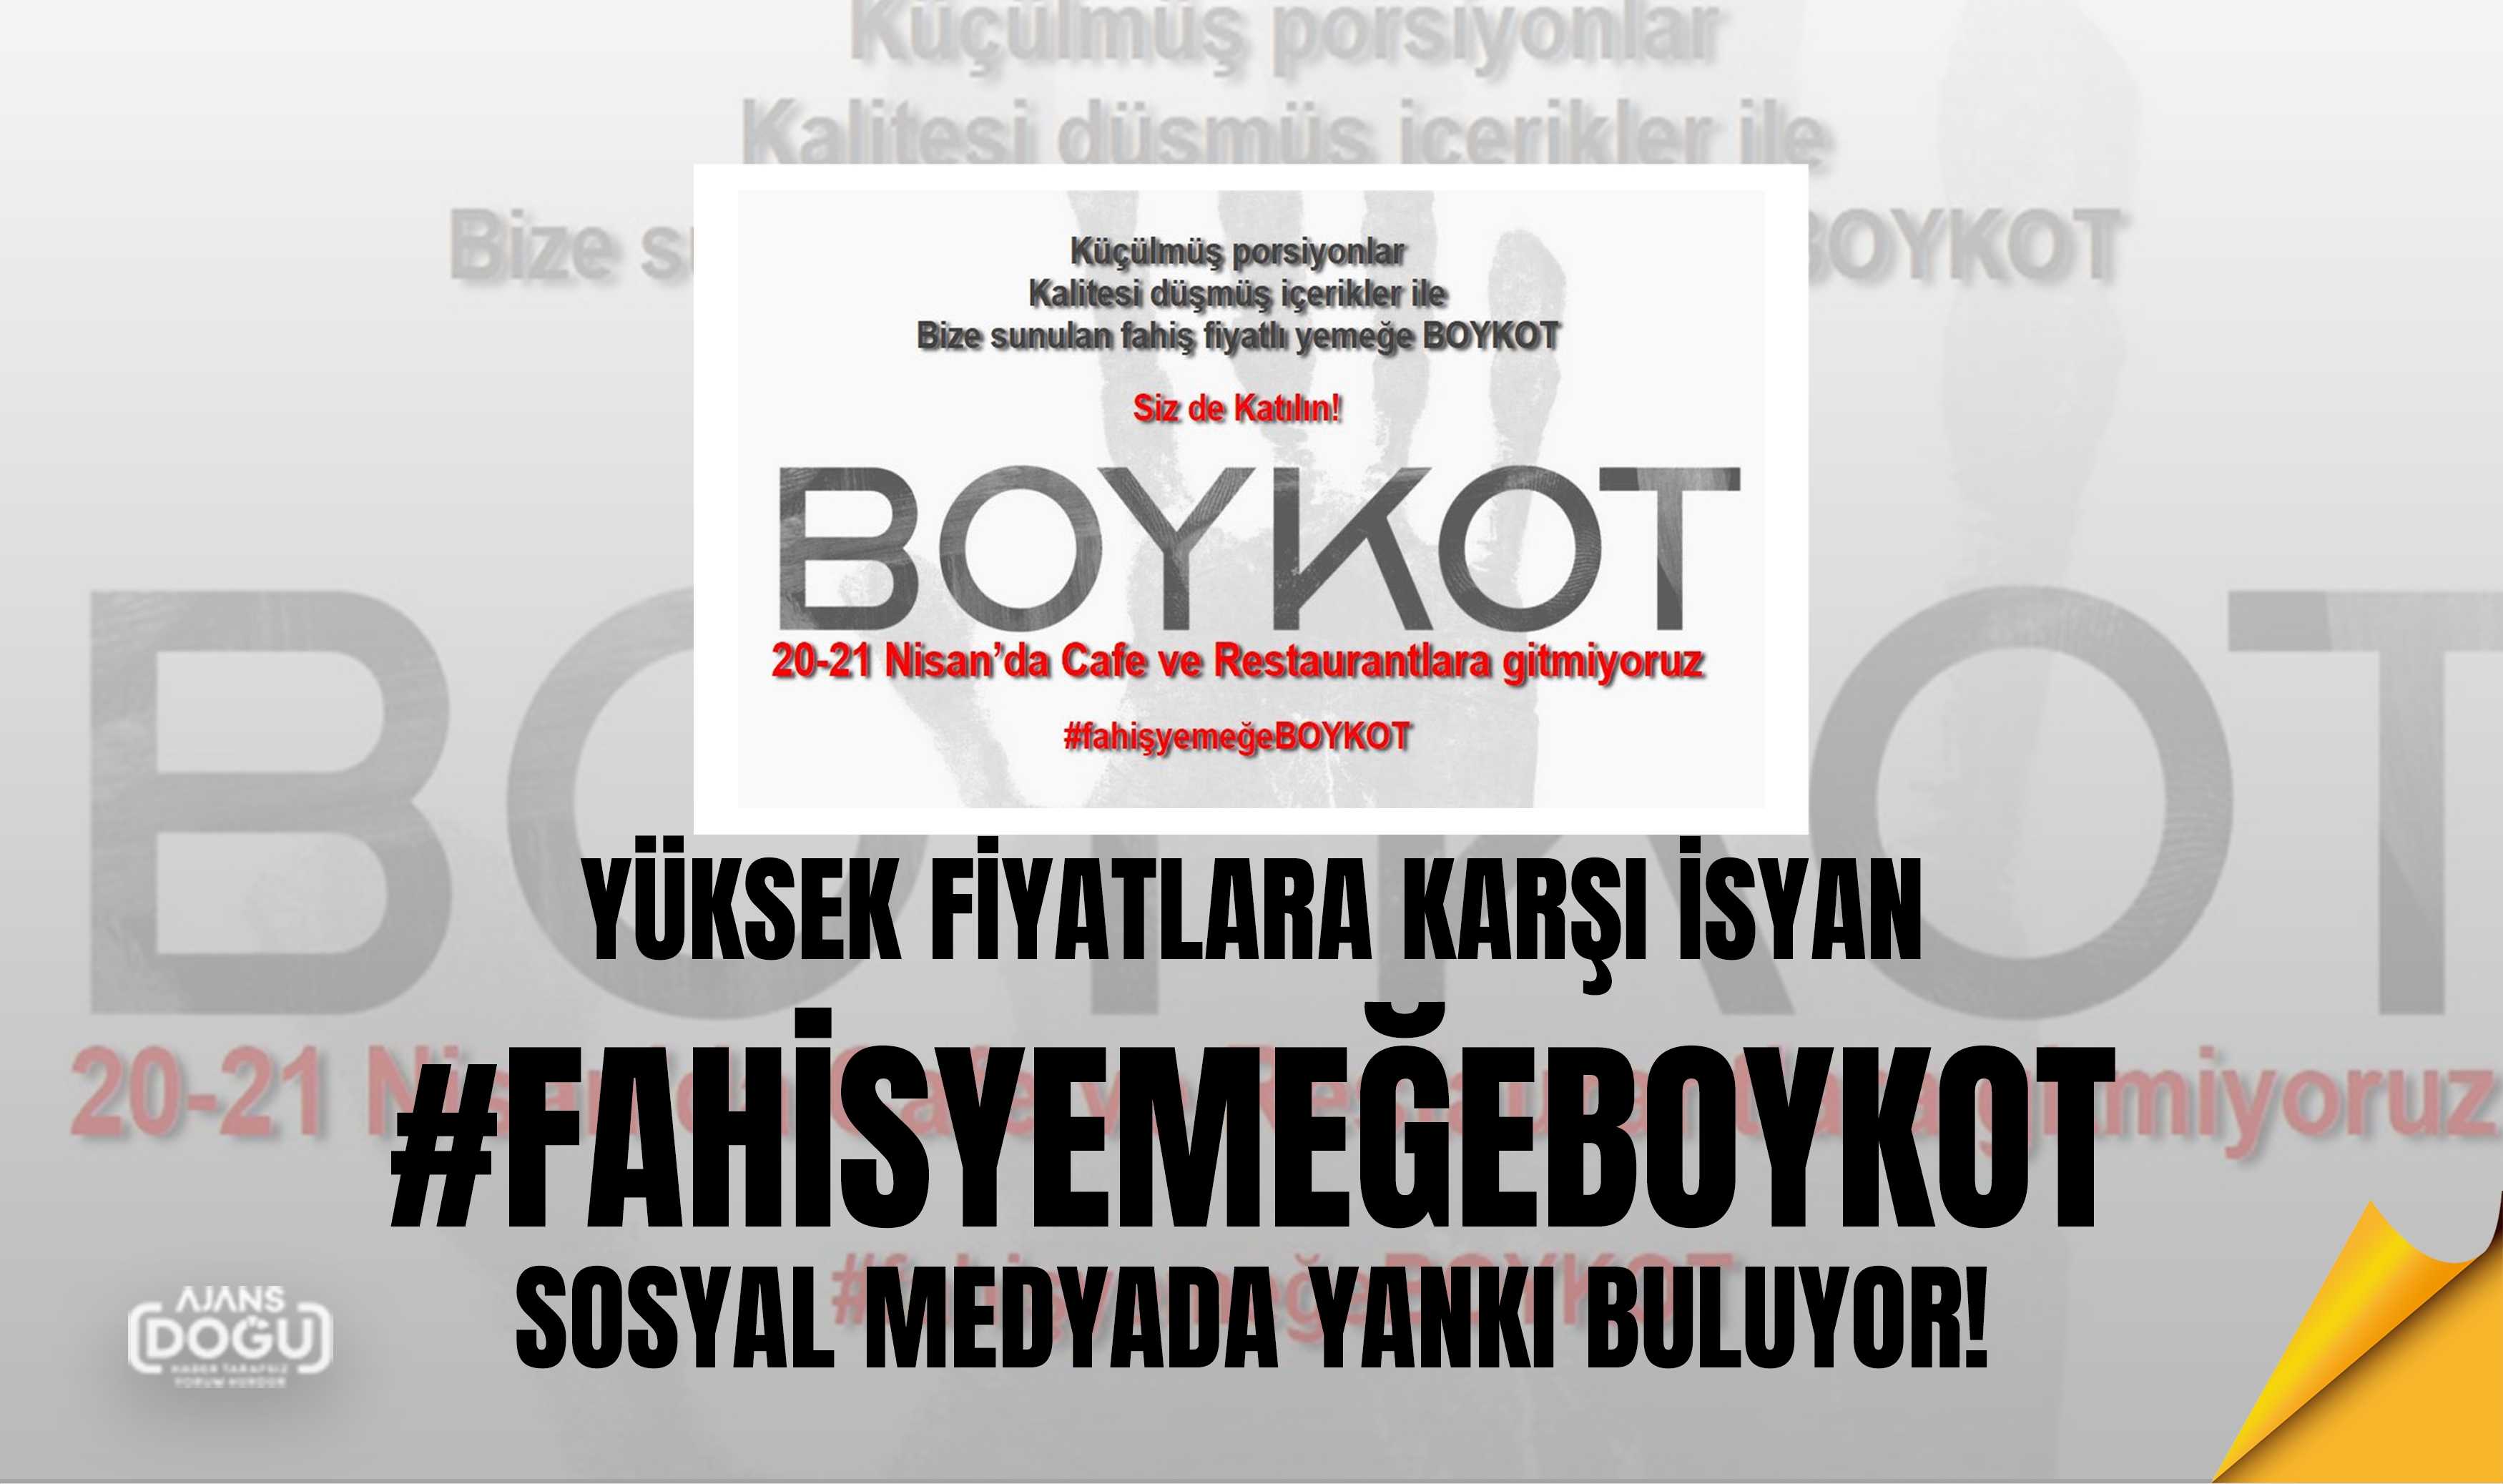 Yüksek fiyatlara karşı isyan: #FahisyemeğeBOYKOT Sosyal Medyada yankı buluyor!